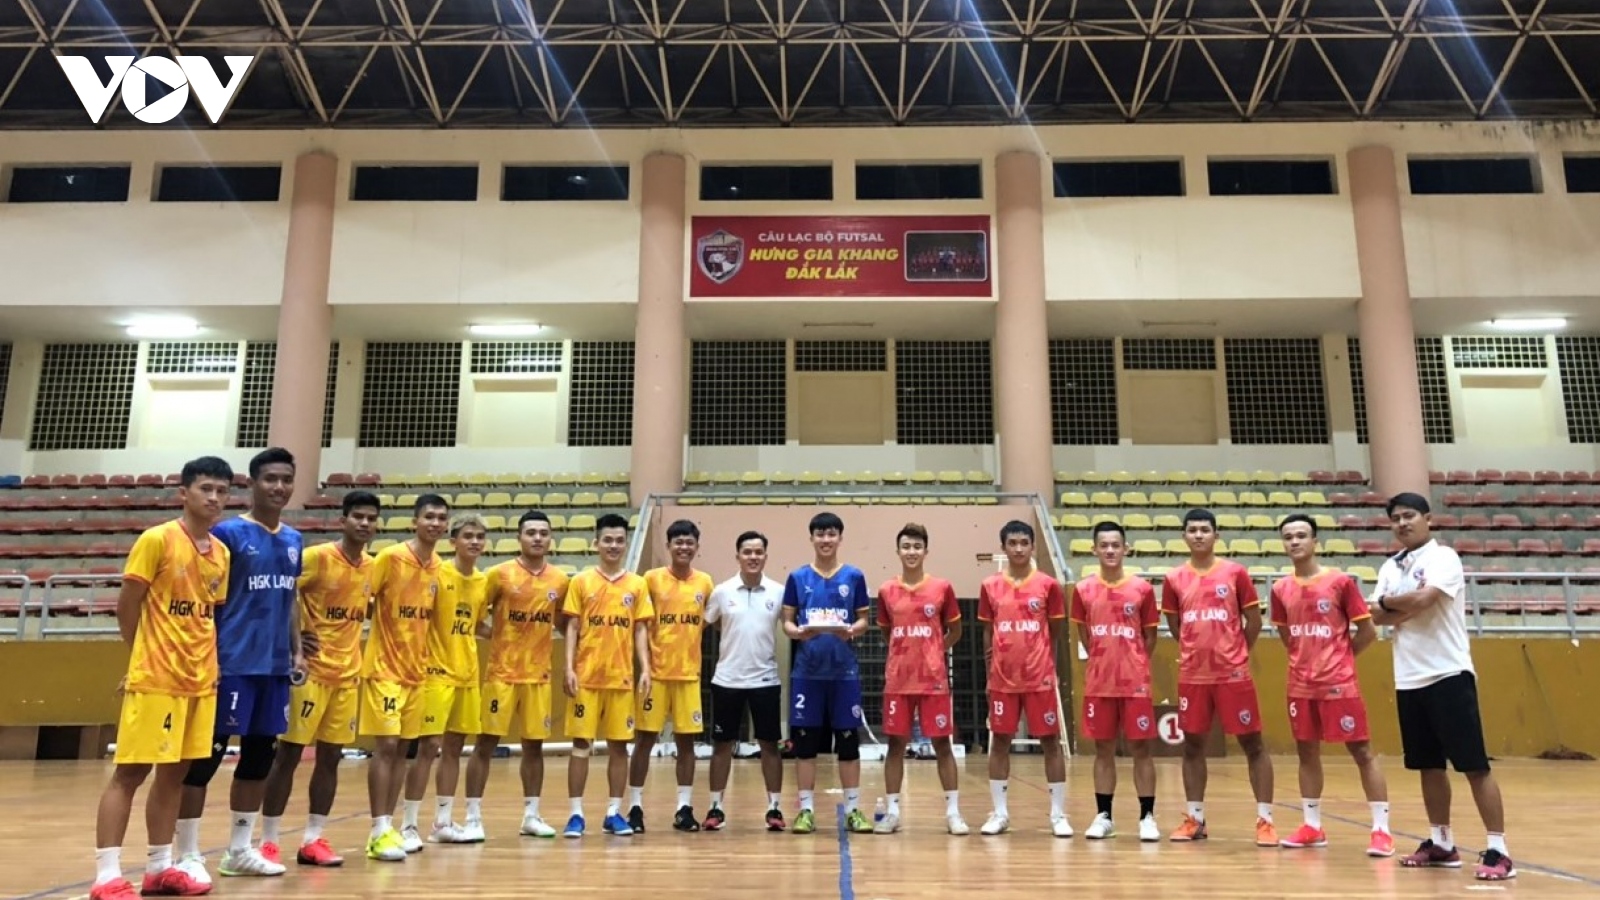 Hưng Gia Khang Đắk Lắk: Tự tin hướng đến mùa giải Futsal 2021